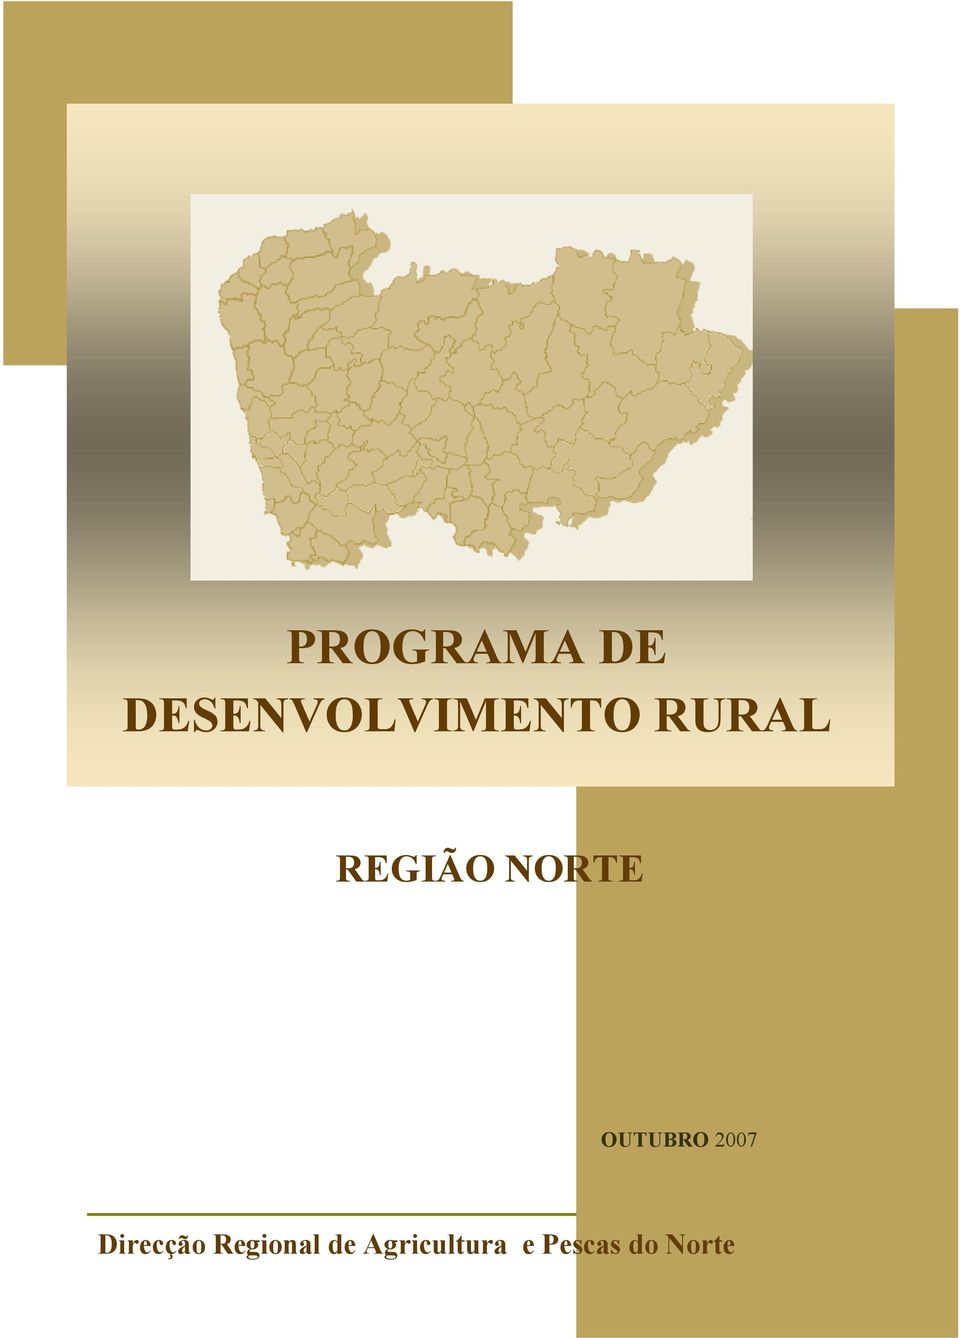 2007 Direcção Regional de